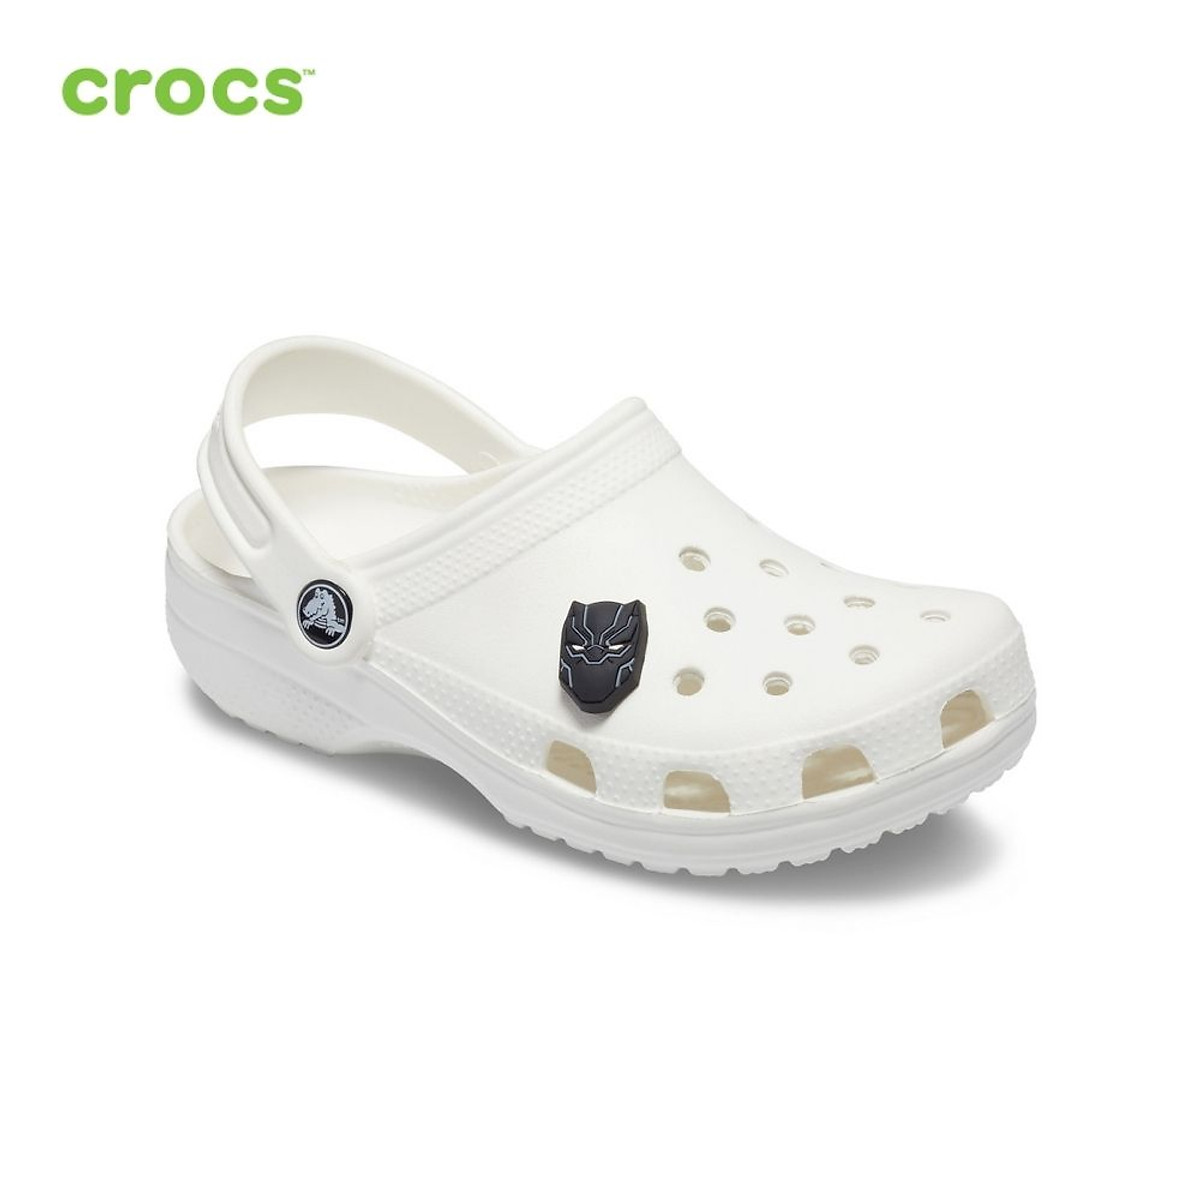 Huy hiệu (jibbitz) unisex Crocs Black Panther Charm - 10007316 - Phụ kiện  cho giày nam